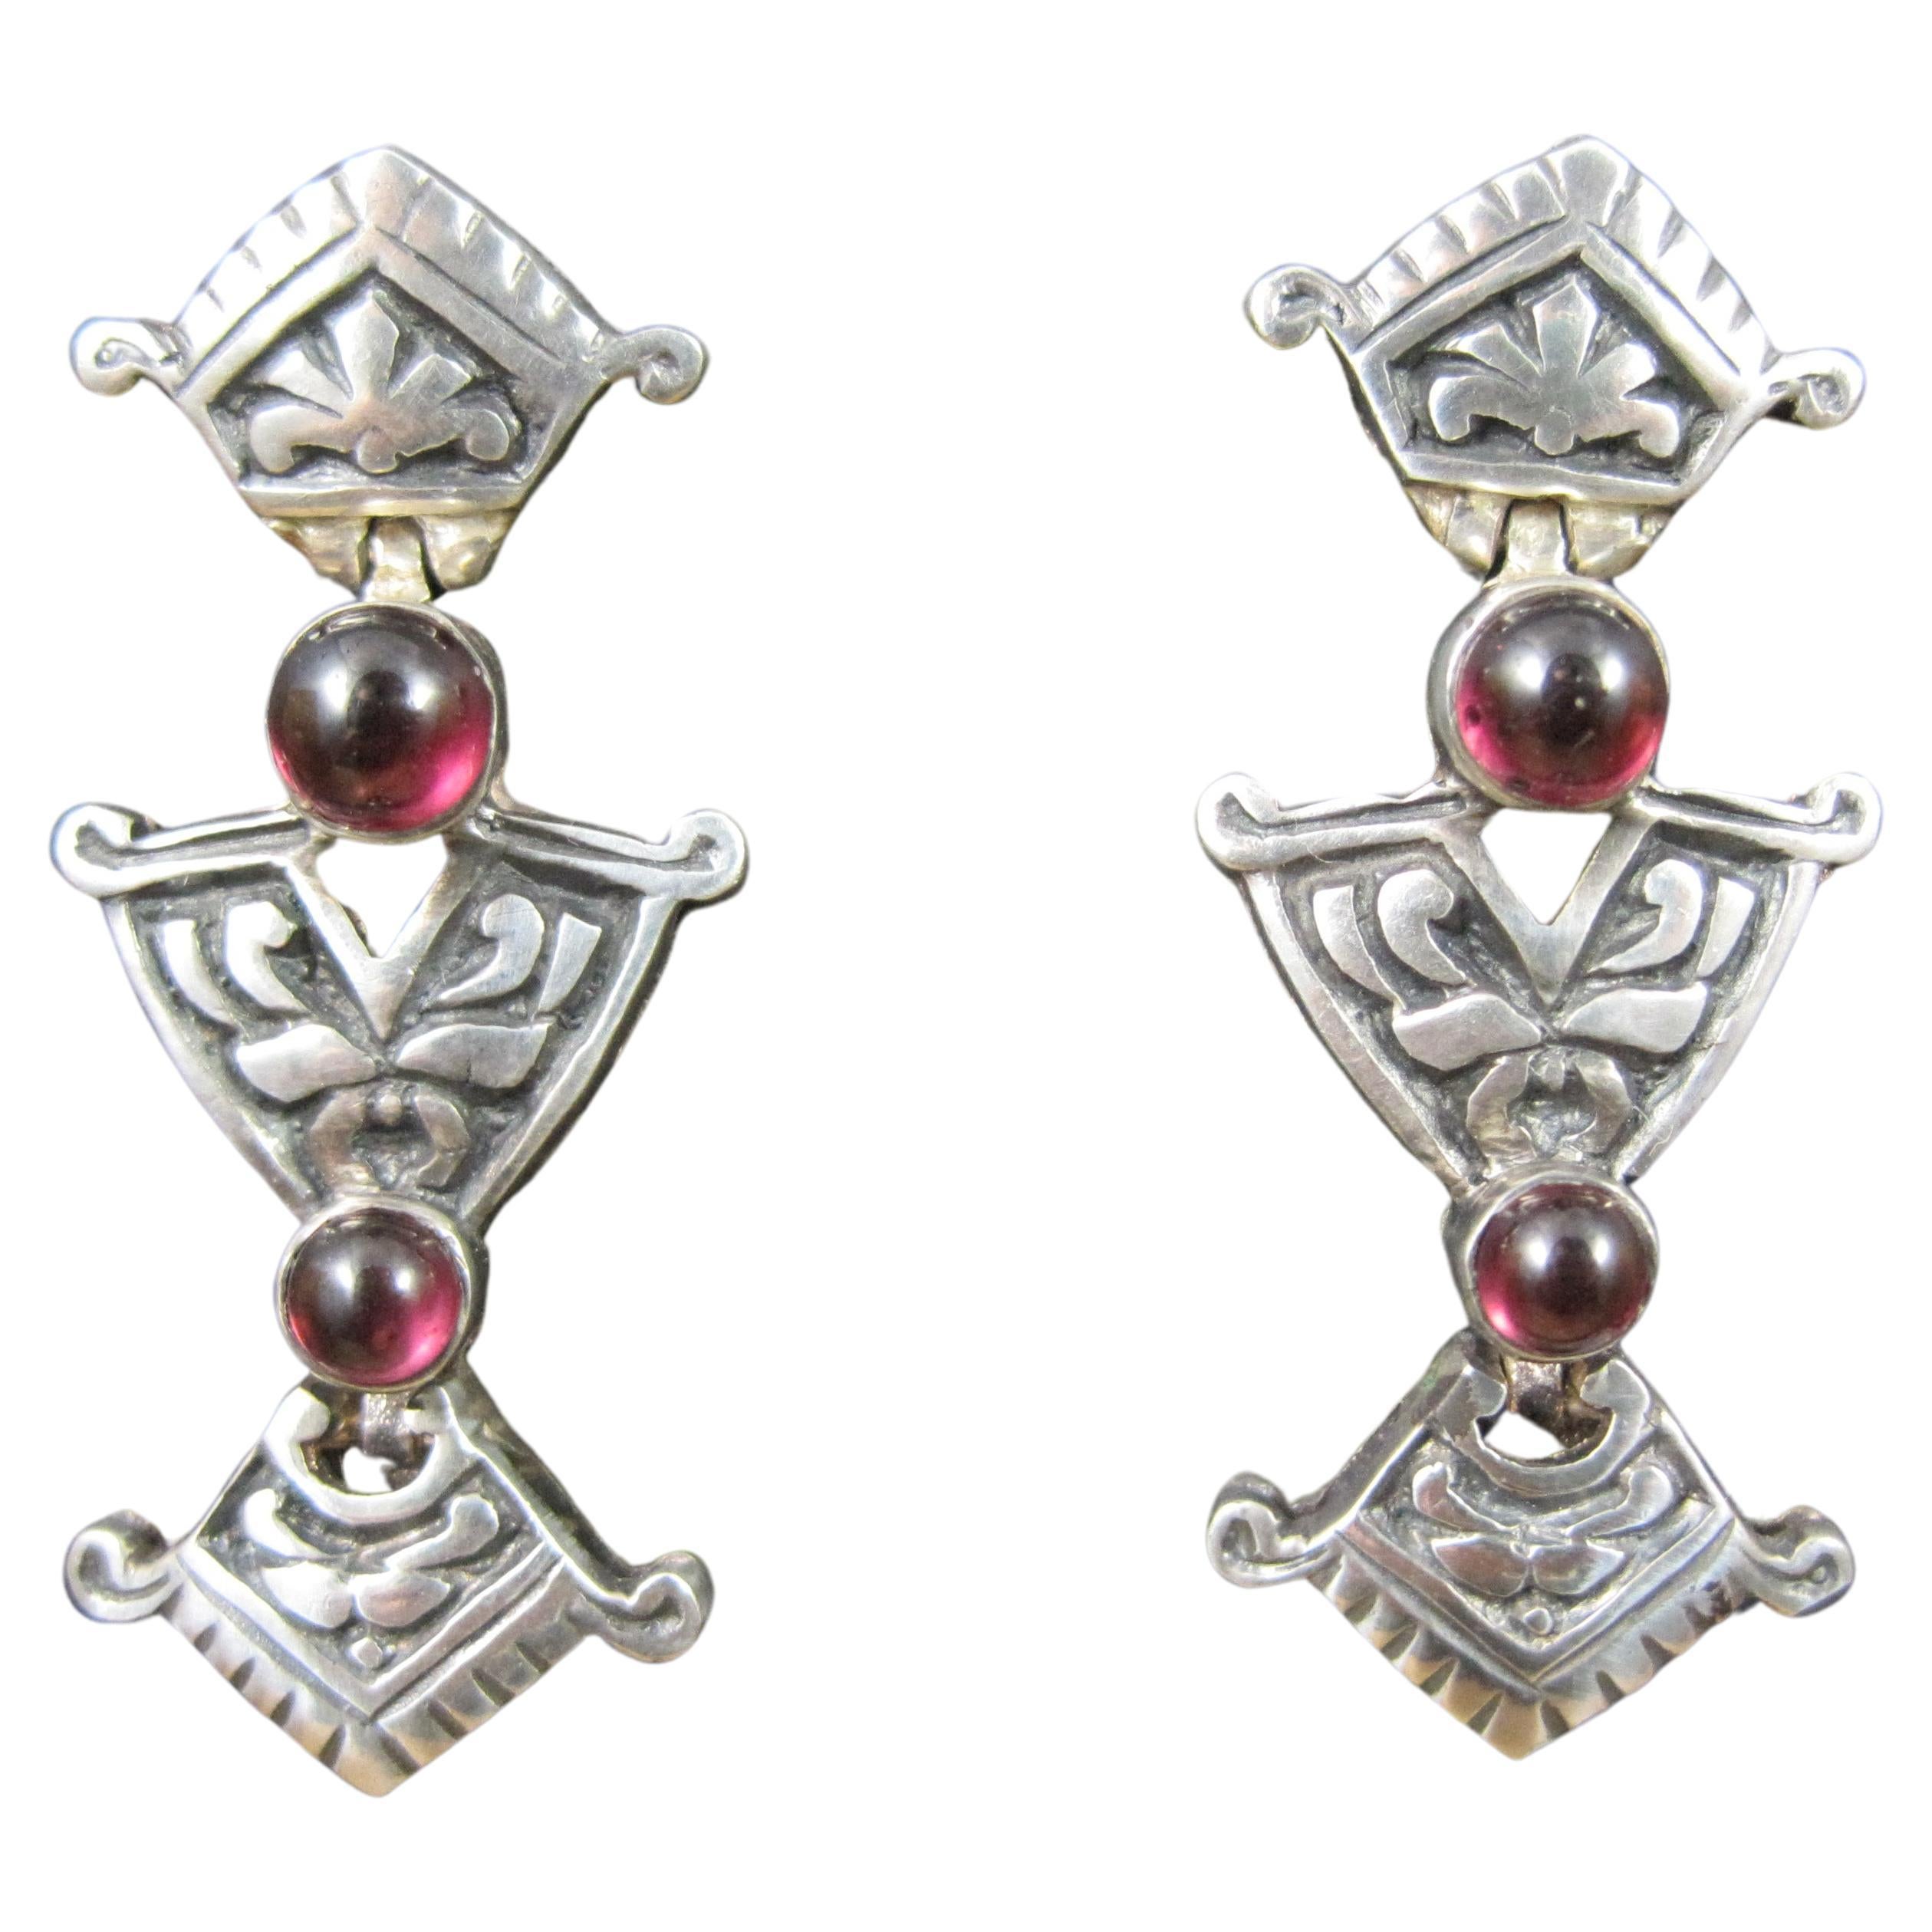 Vintage Art Nouveau Style Garnet Earrings in Sterling Silver